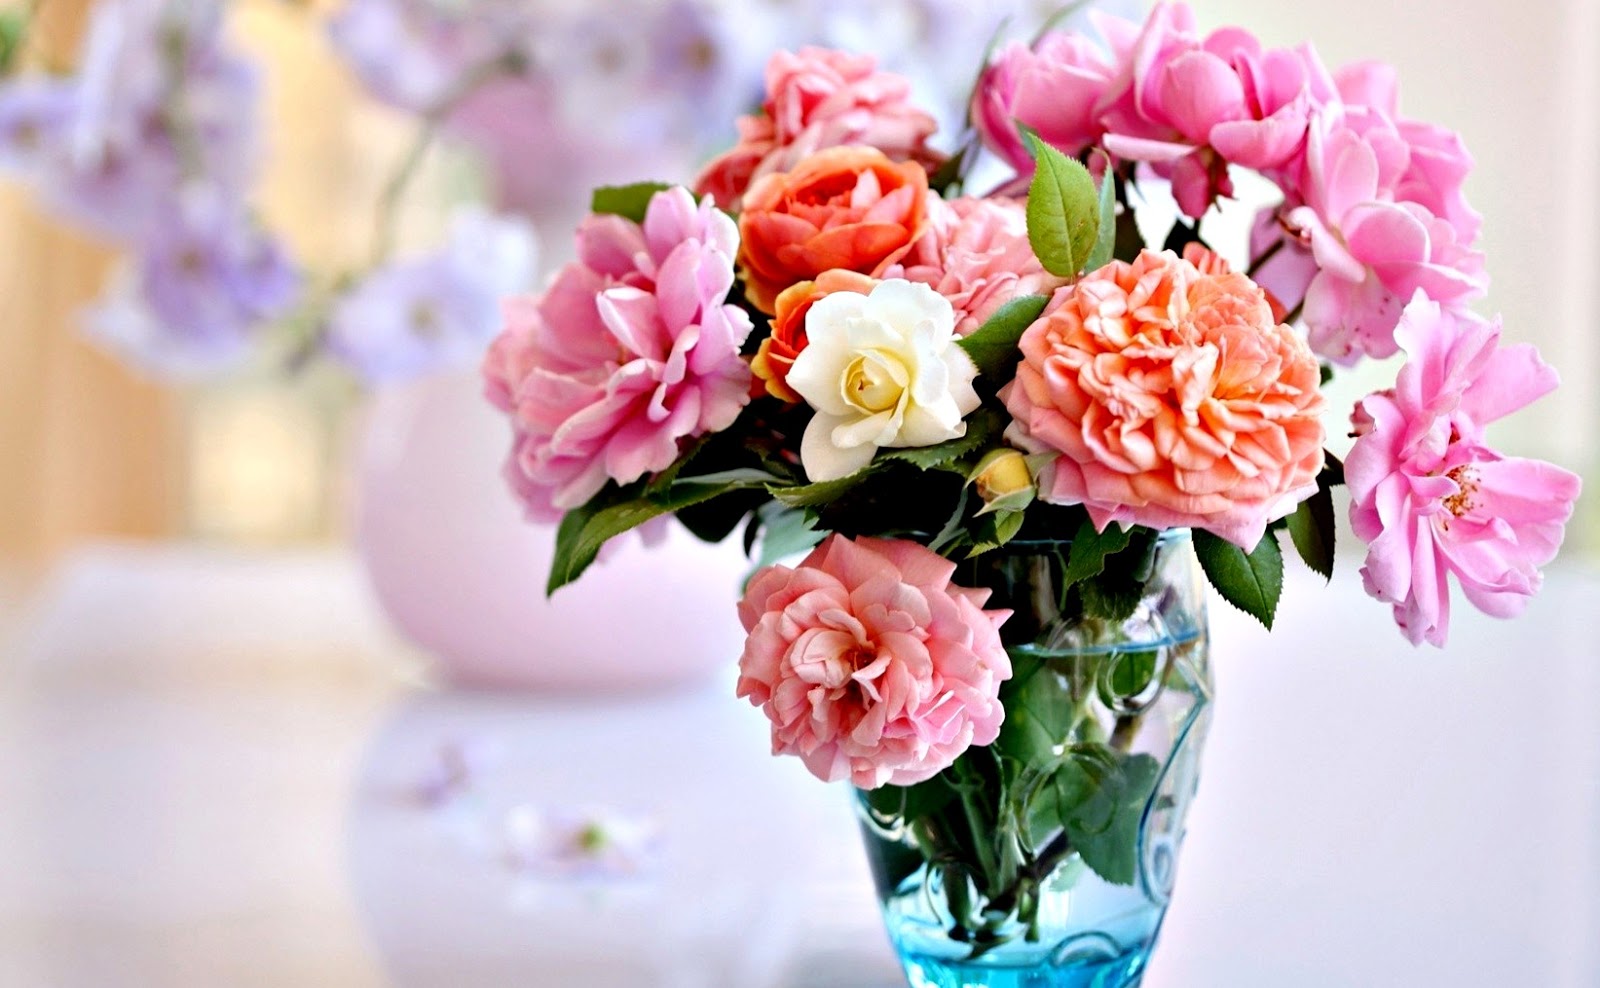 Gambar Bunga Mawar Untuk Instagram - Informasi Seputar ...